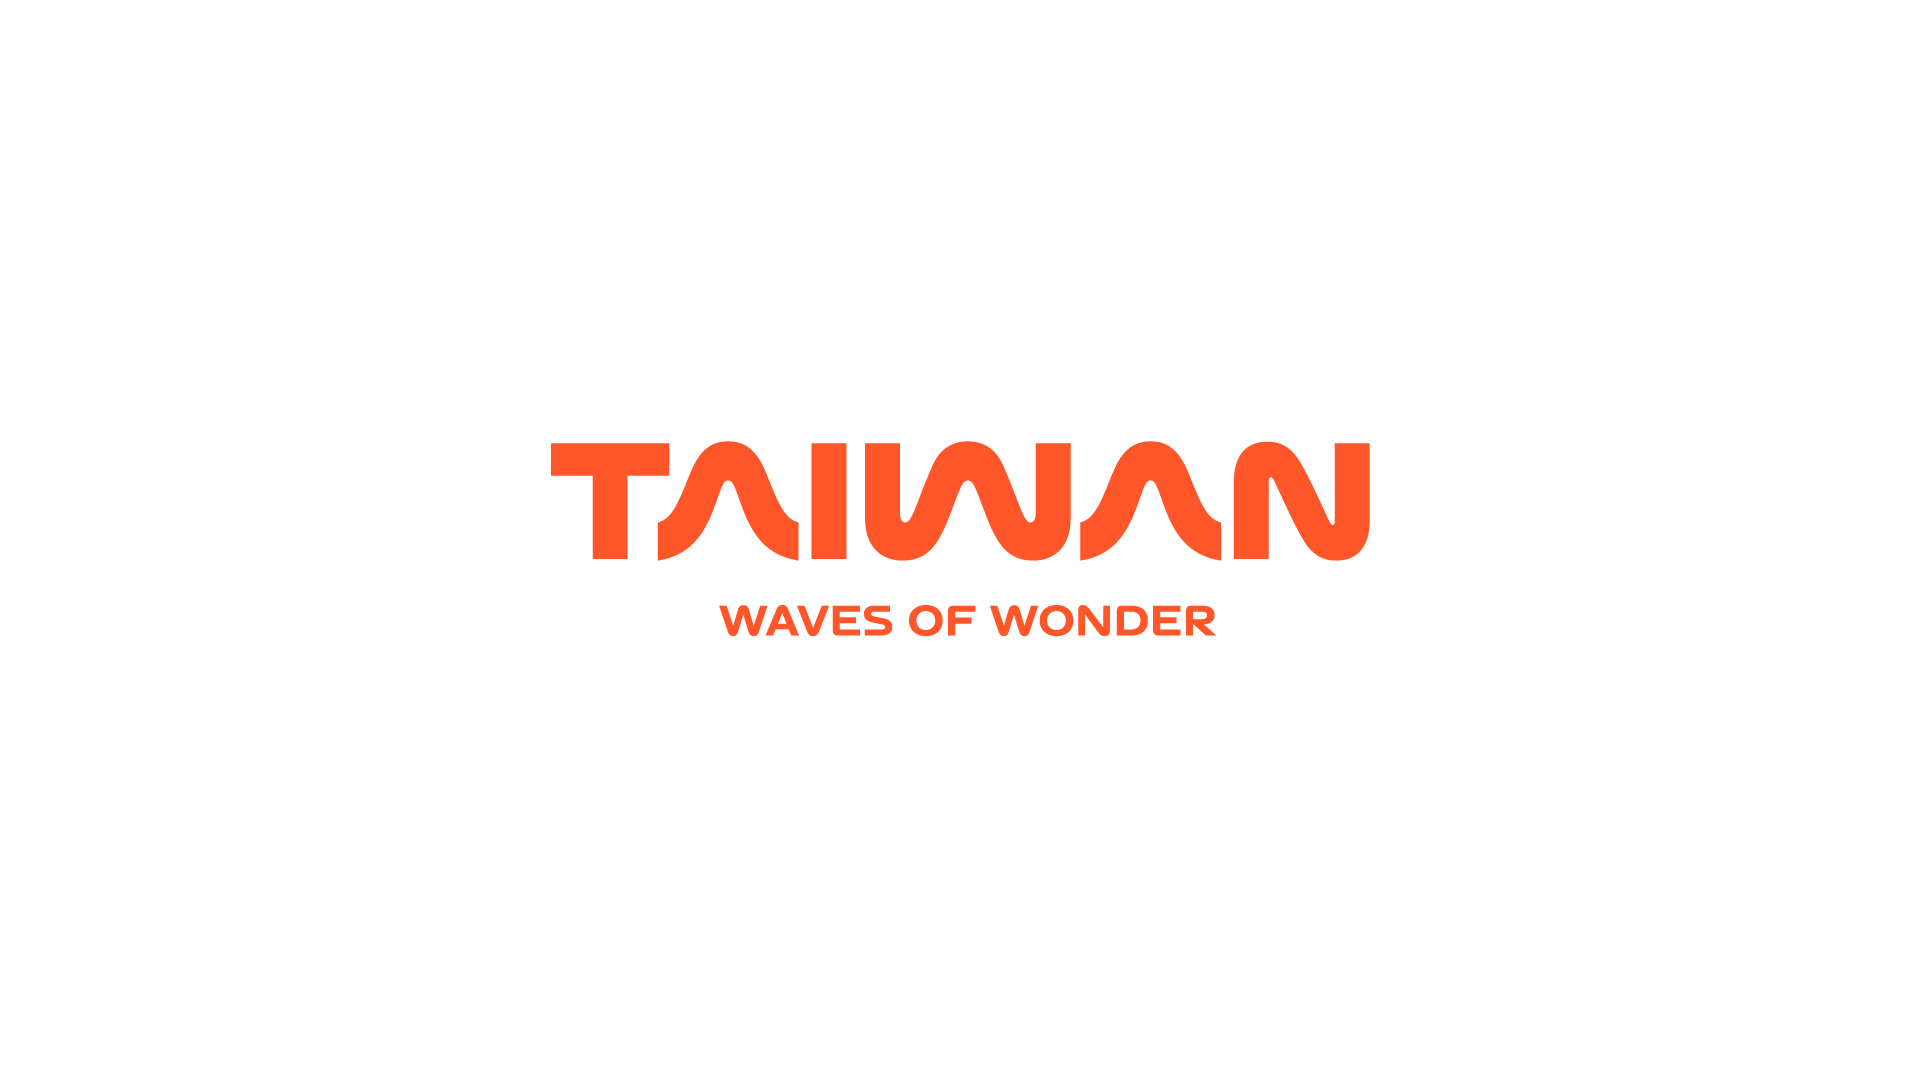 Taiwan waves of wonder(JP)